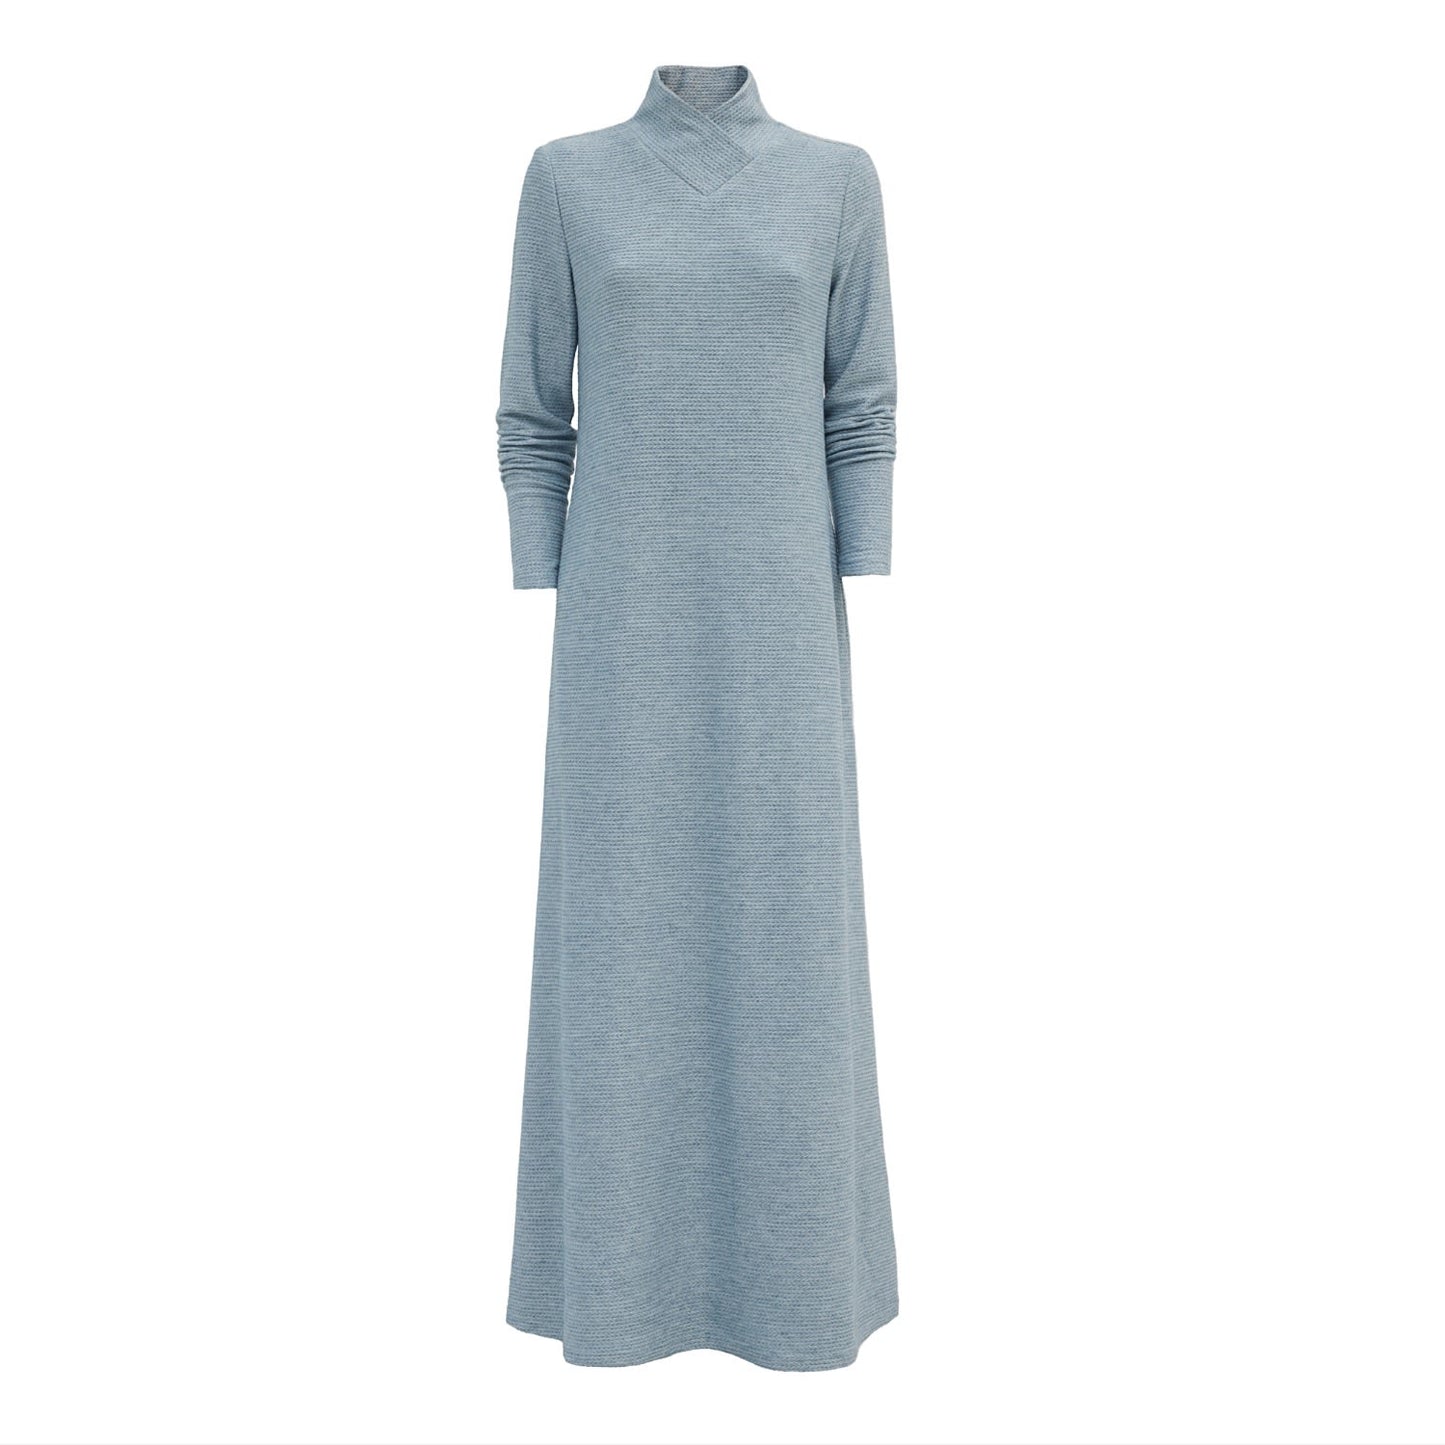 Textured Knit Floor-Length Long Sleeve Dress Light Blue